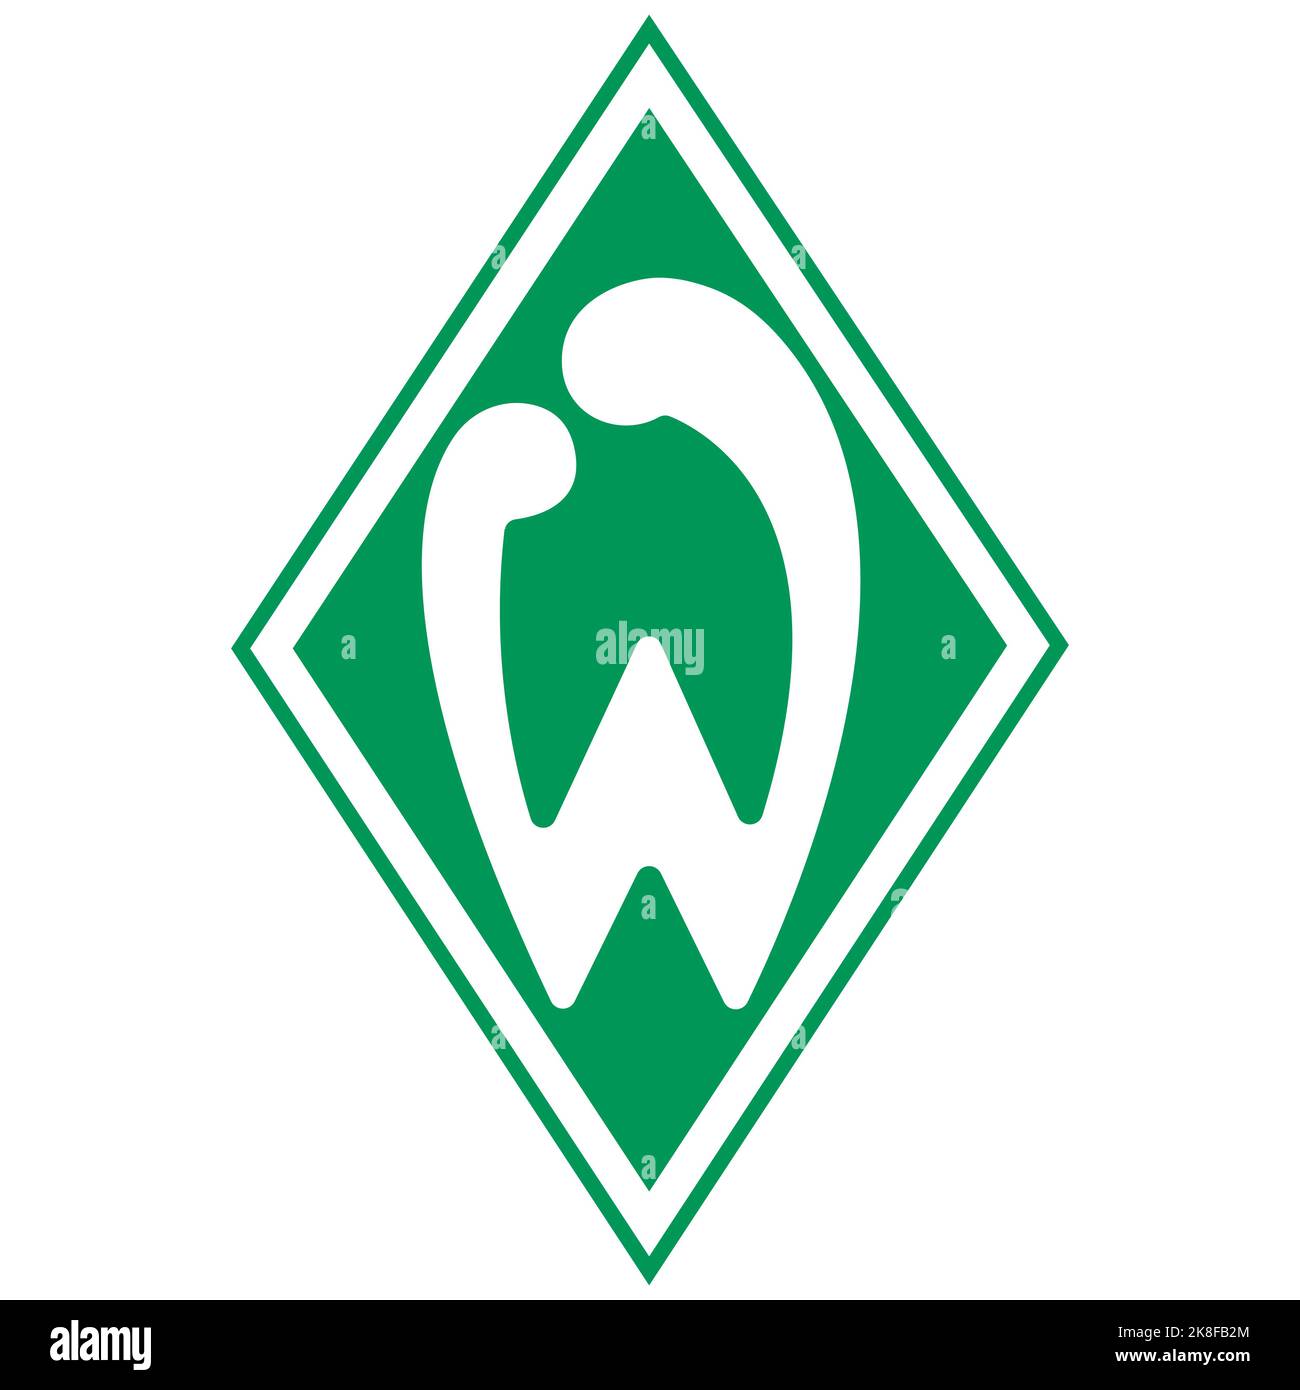 Francfort-sur-le-main, Allemagne - 10.23.2022 logo du club de football allemand Werder Bremen. Image vectorielle Illustration de Vecteur